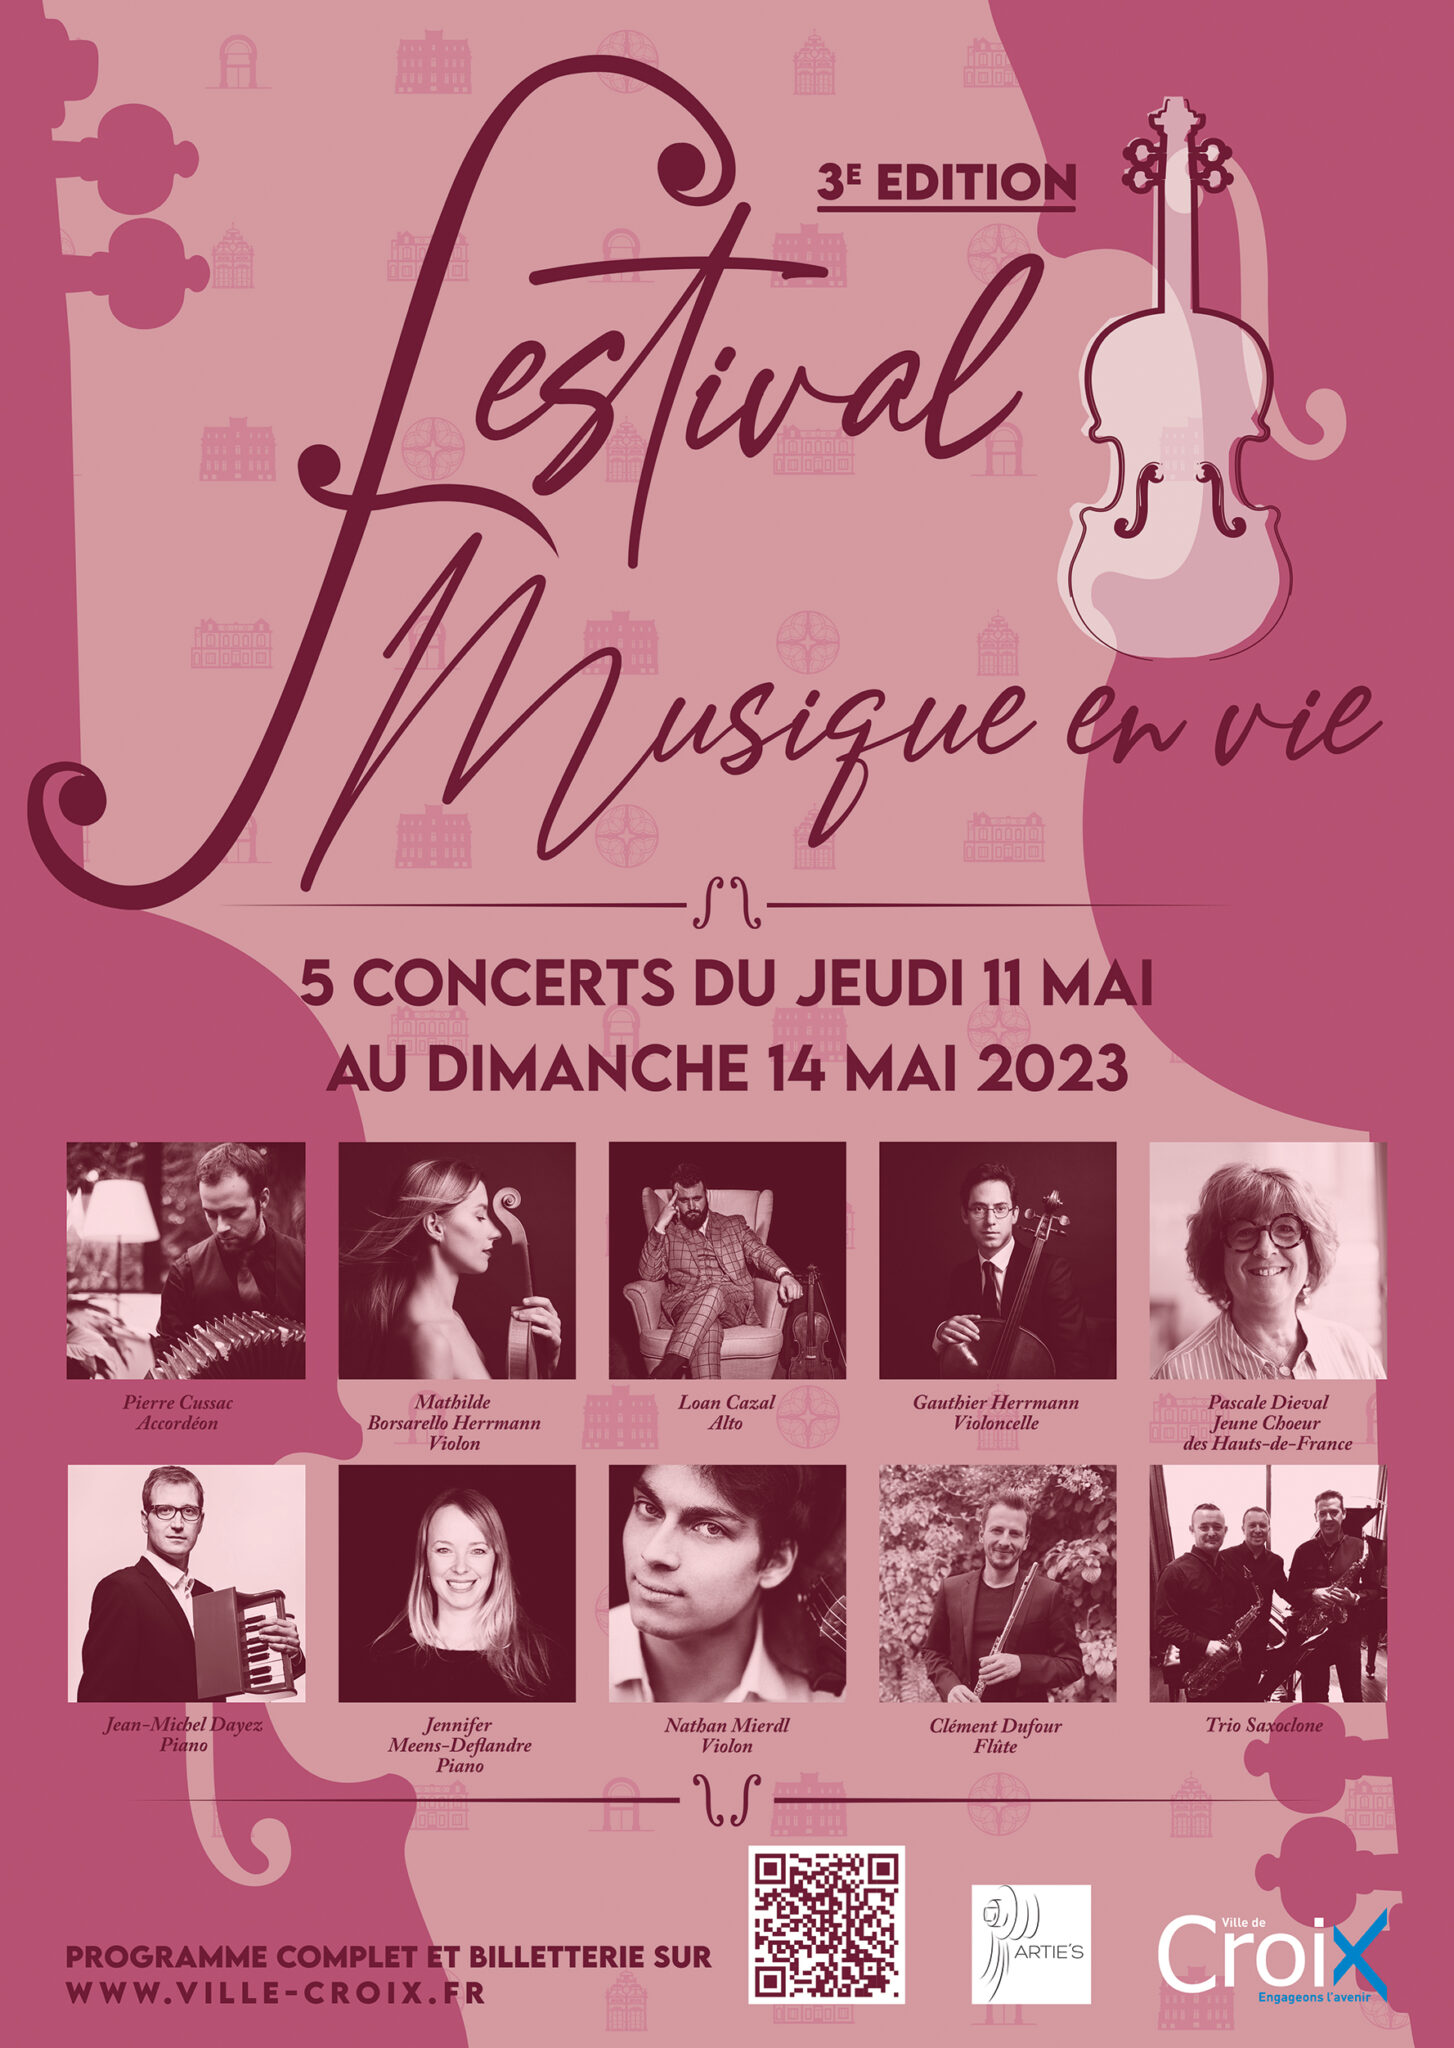 Affiche du festival de musique en vie à Croix, 2023